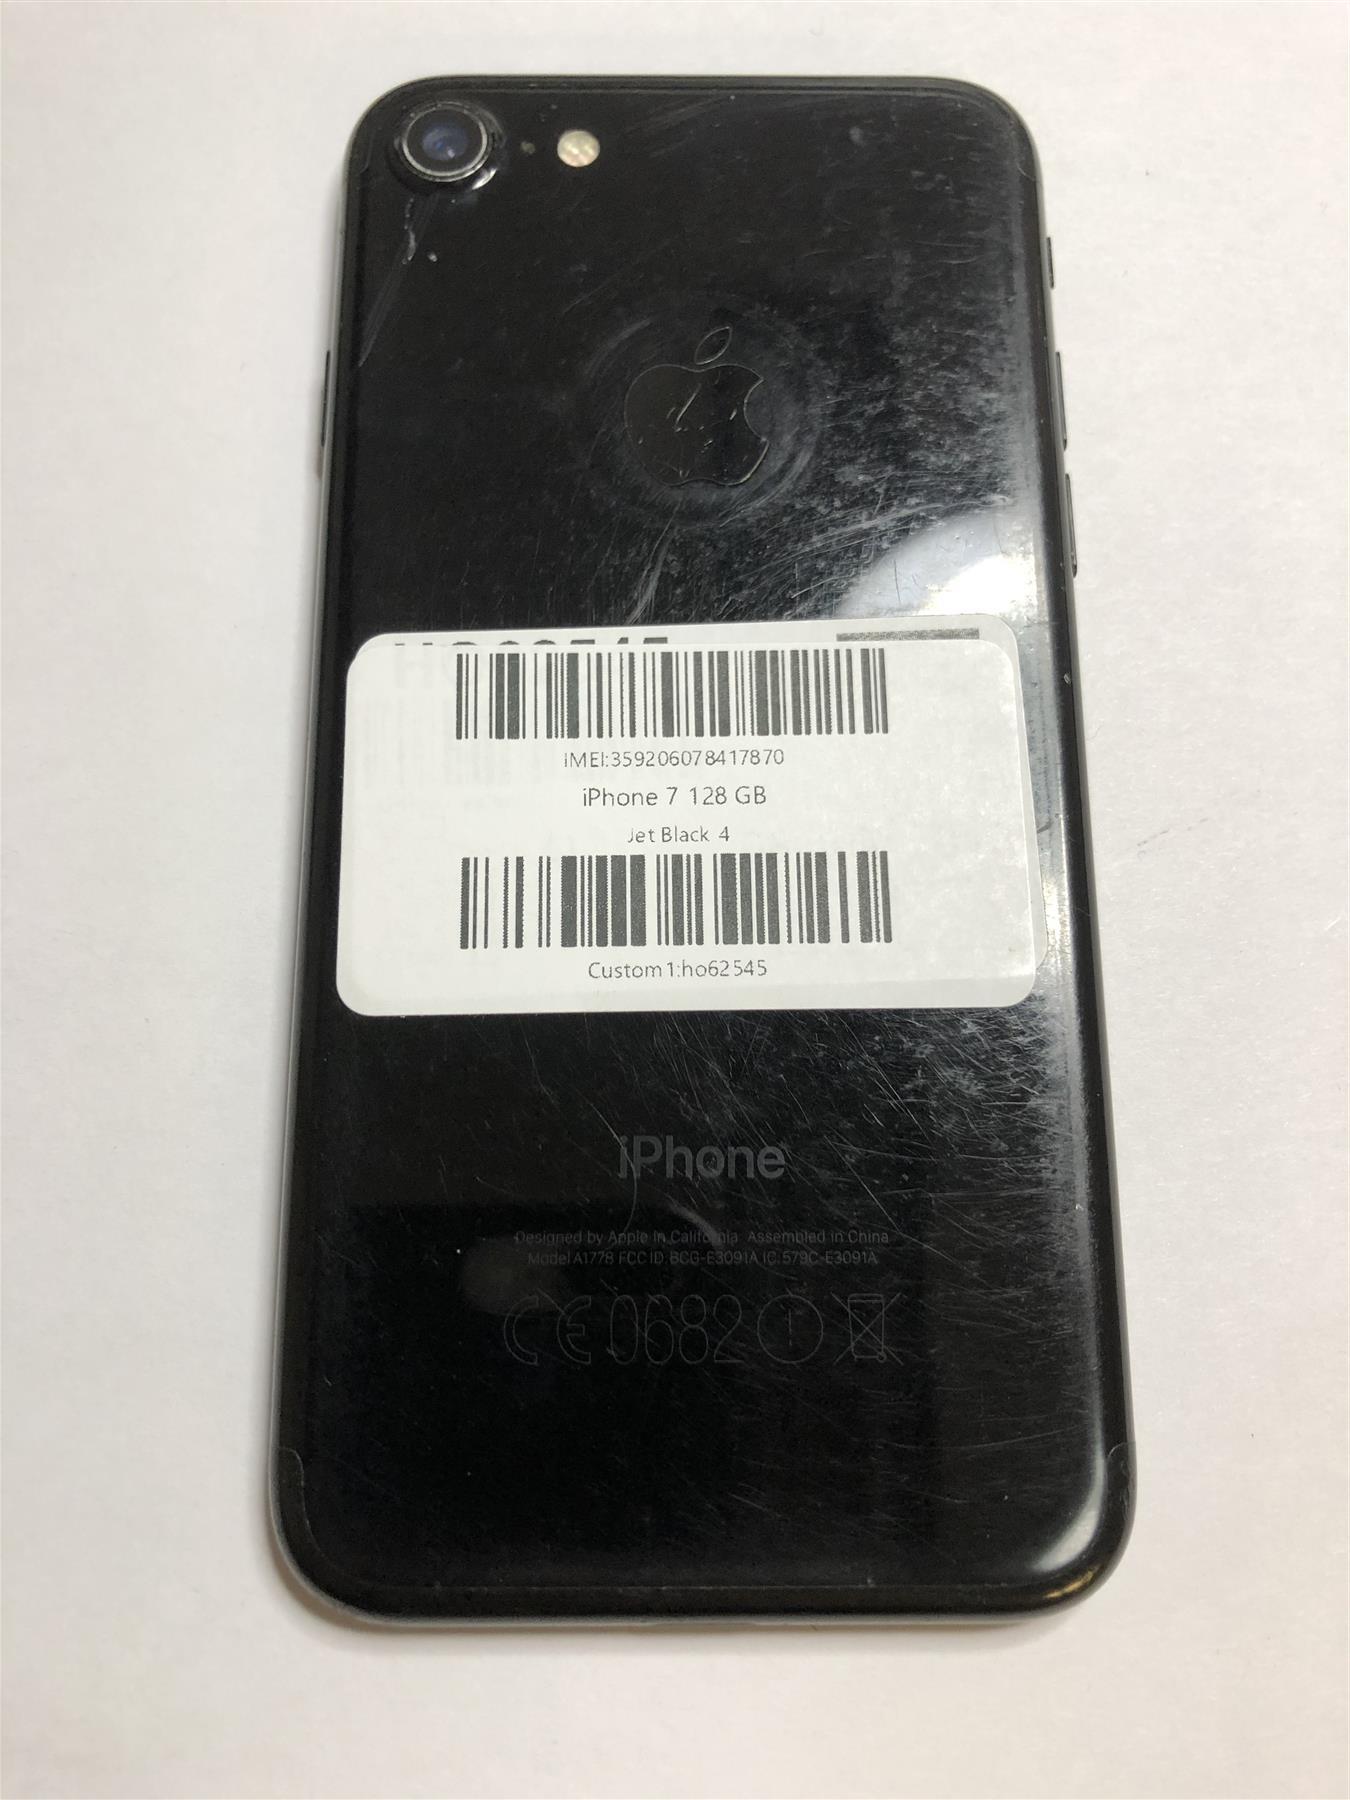 Apple iPhone 7 128GB Jet Black Unlocked - Used